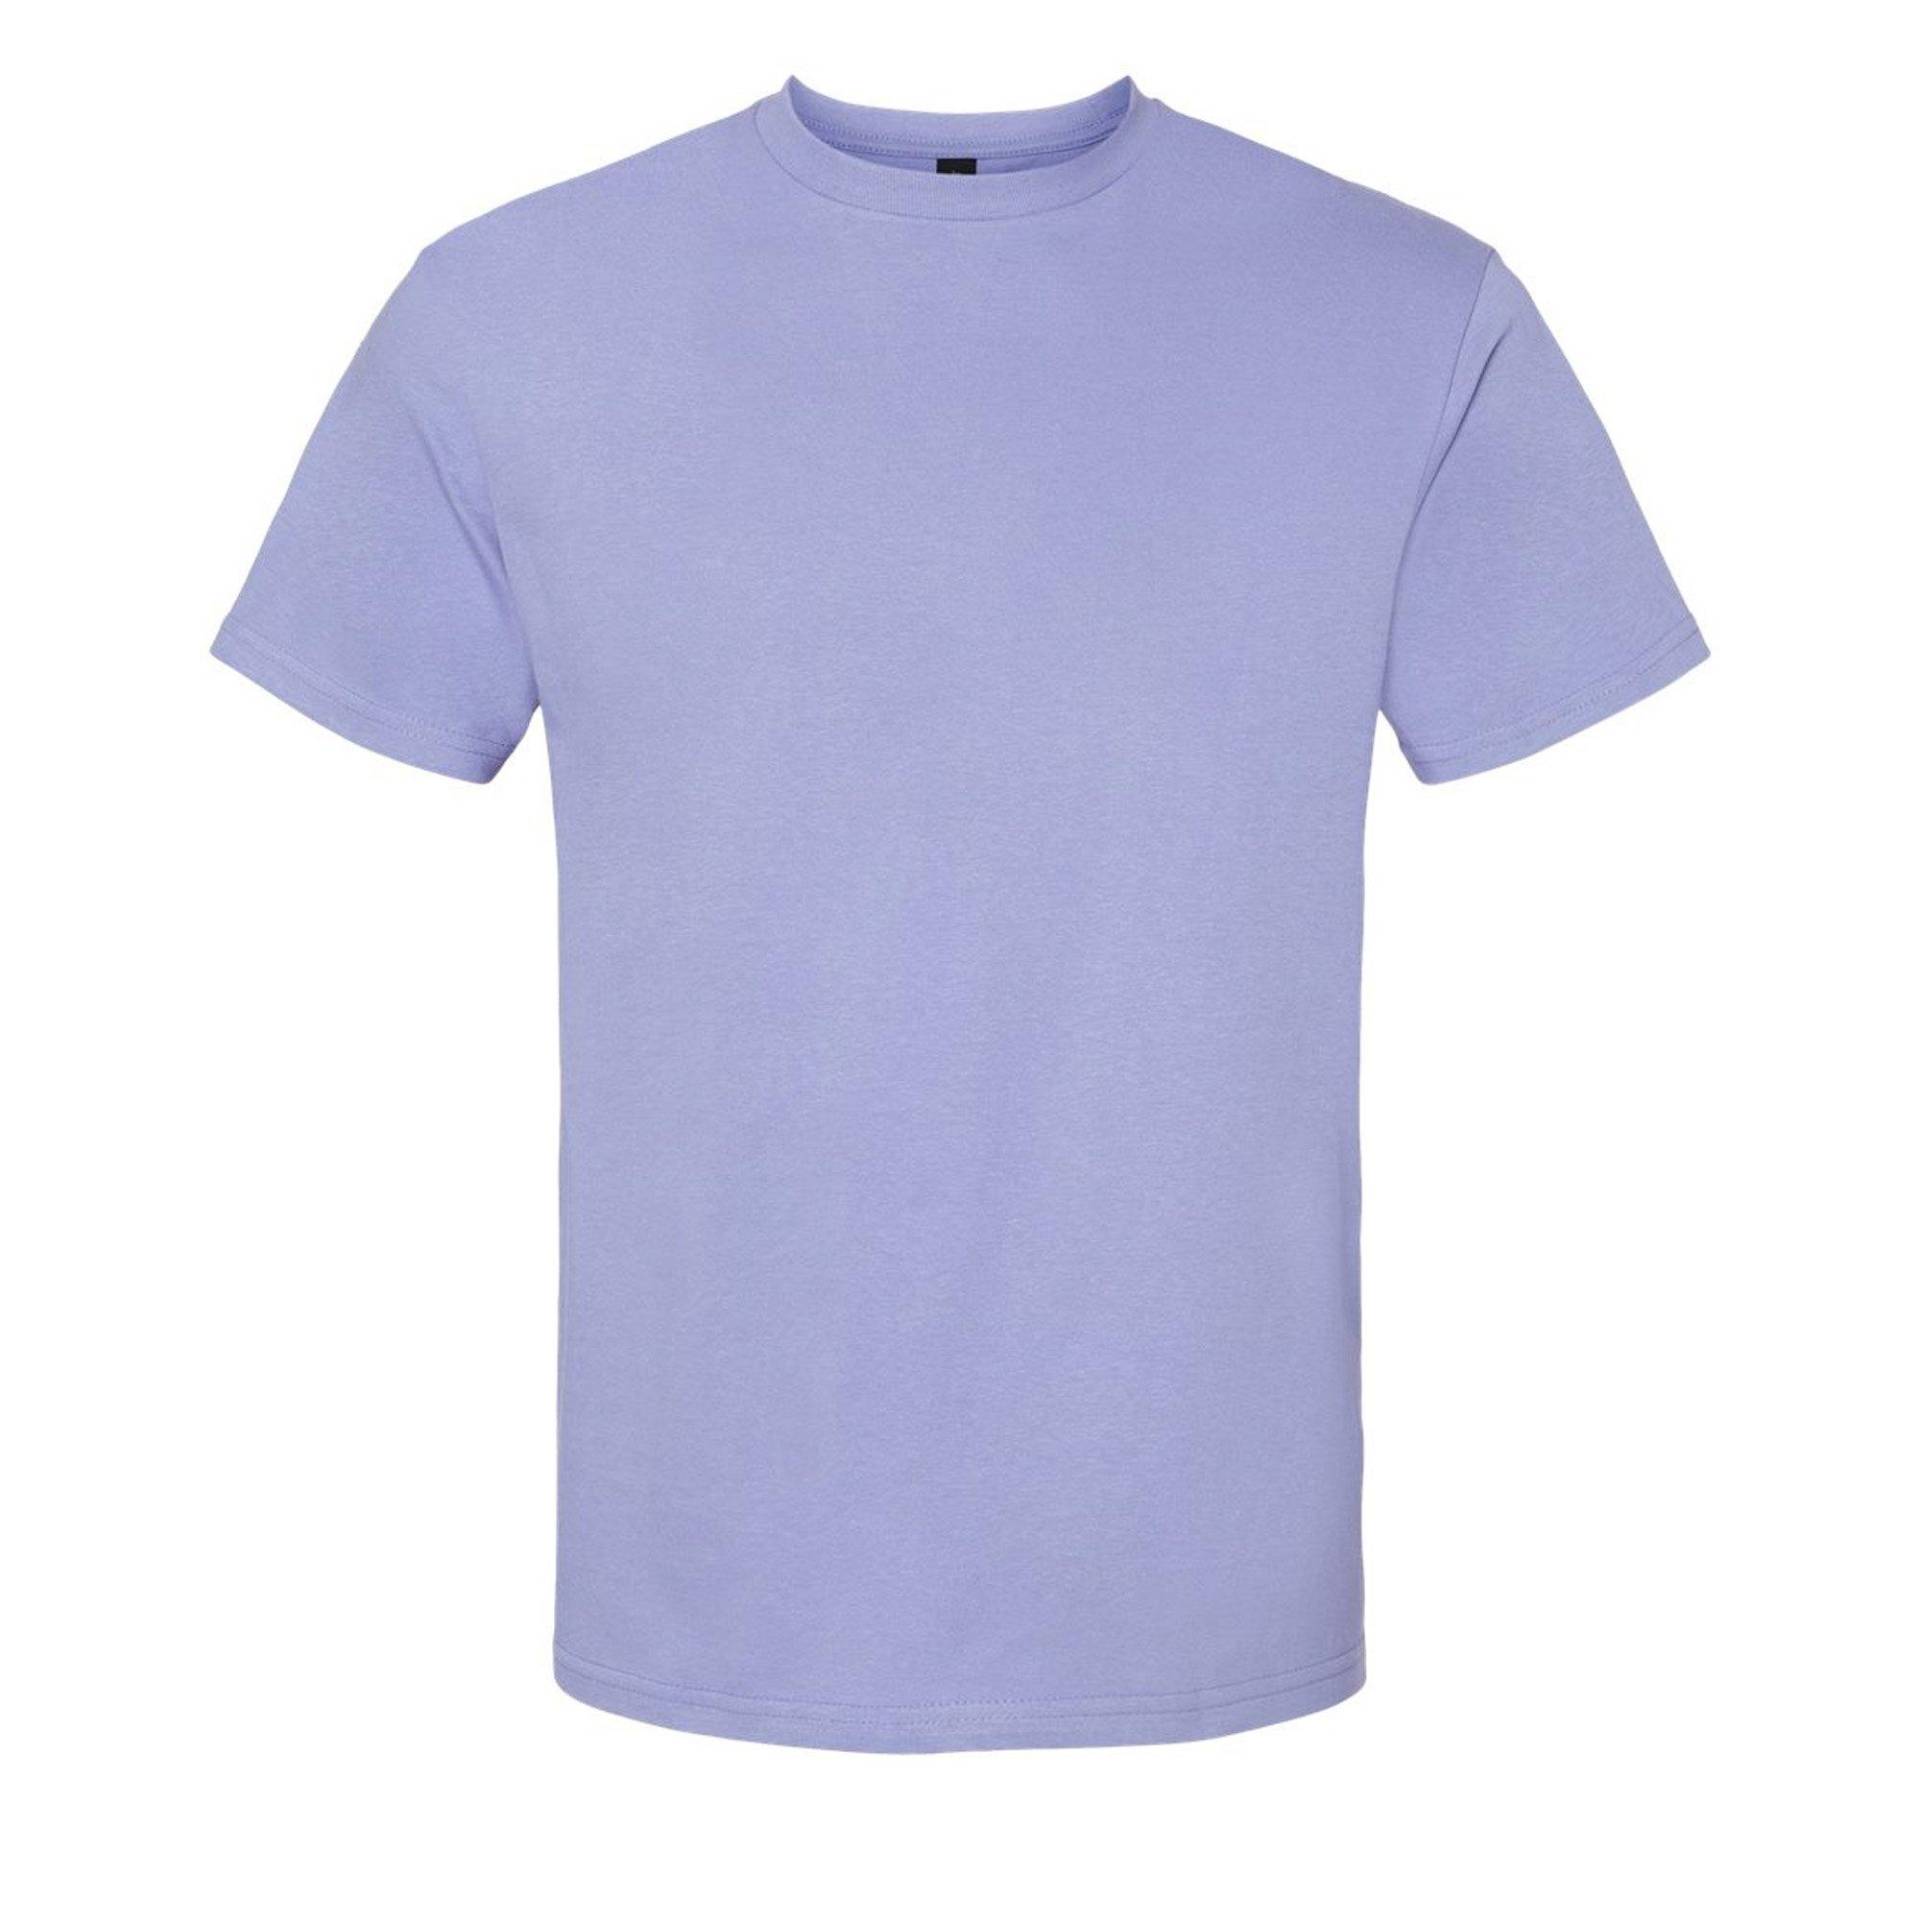 Softstyle Tshirt Damen Violett S von Gildan